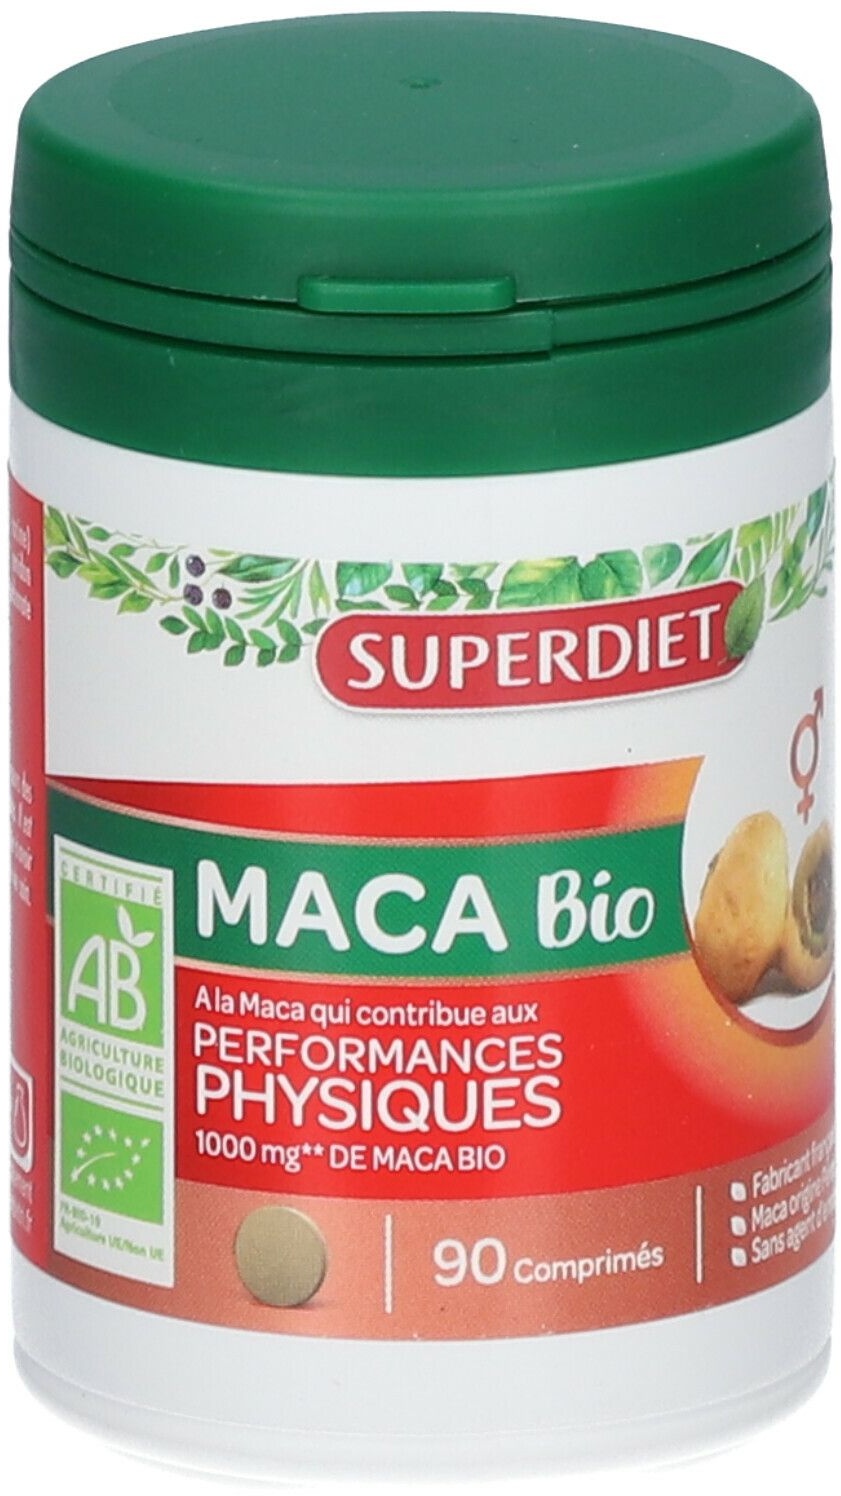 SUPERDIET Maca Bio Performances physiques 90 pc(s) comprimé(s)